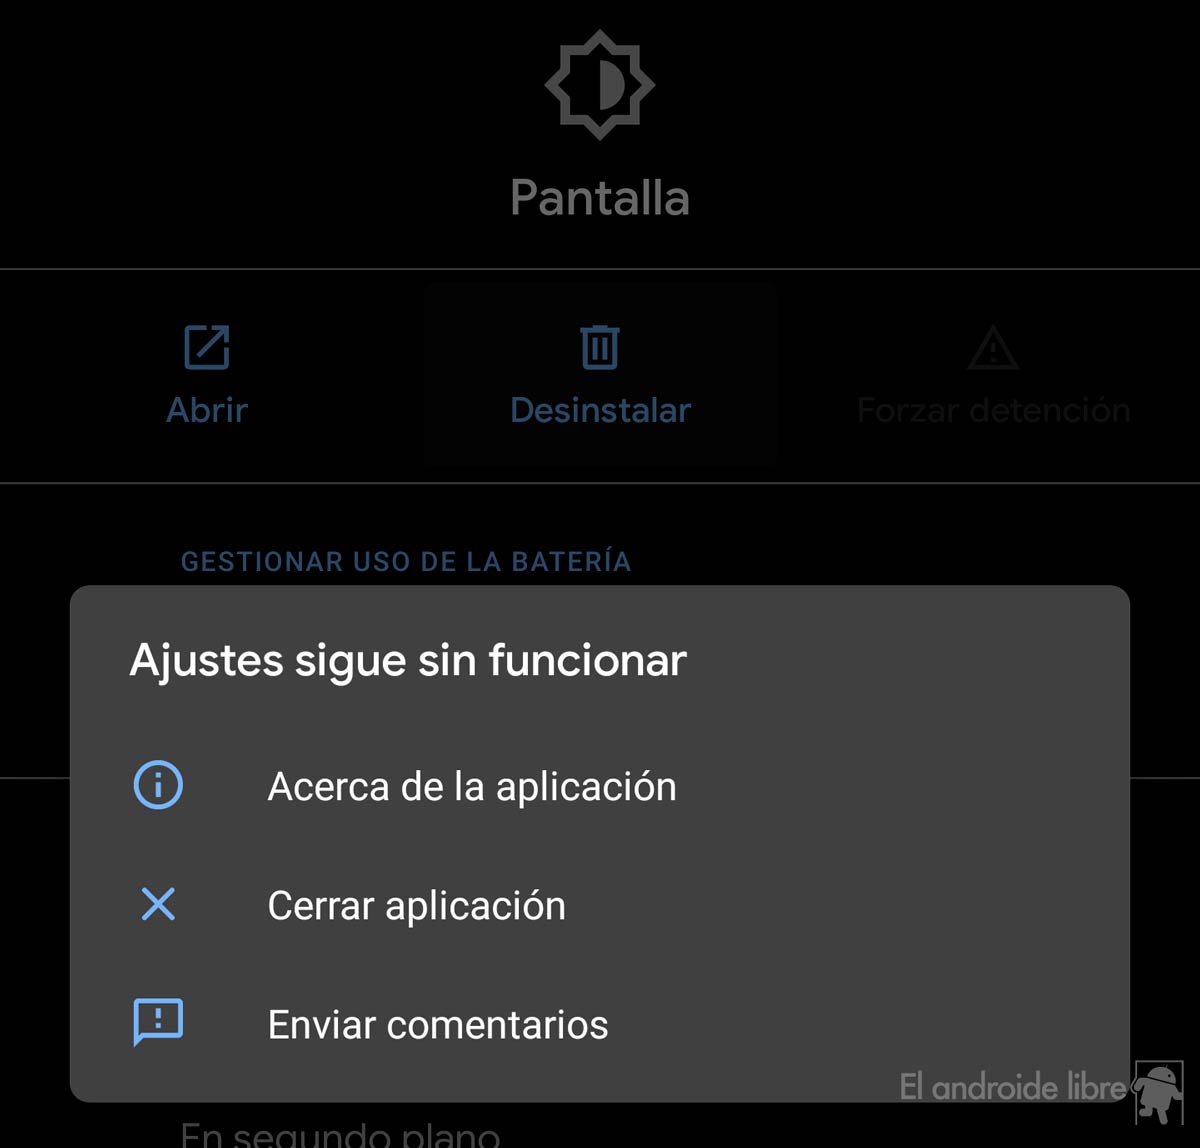 Un error en Android 10 permite “desinstalar” la pantalla 2